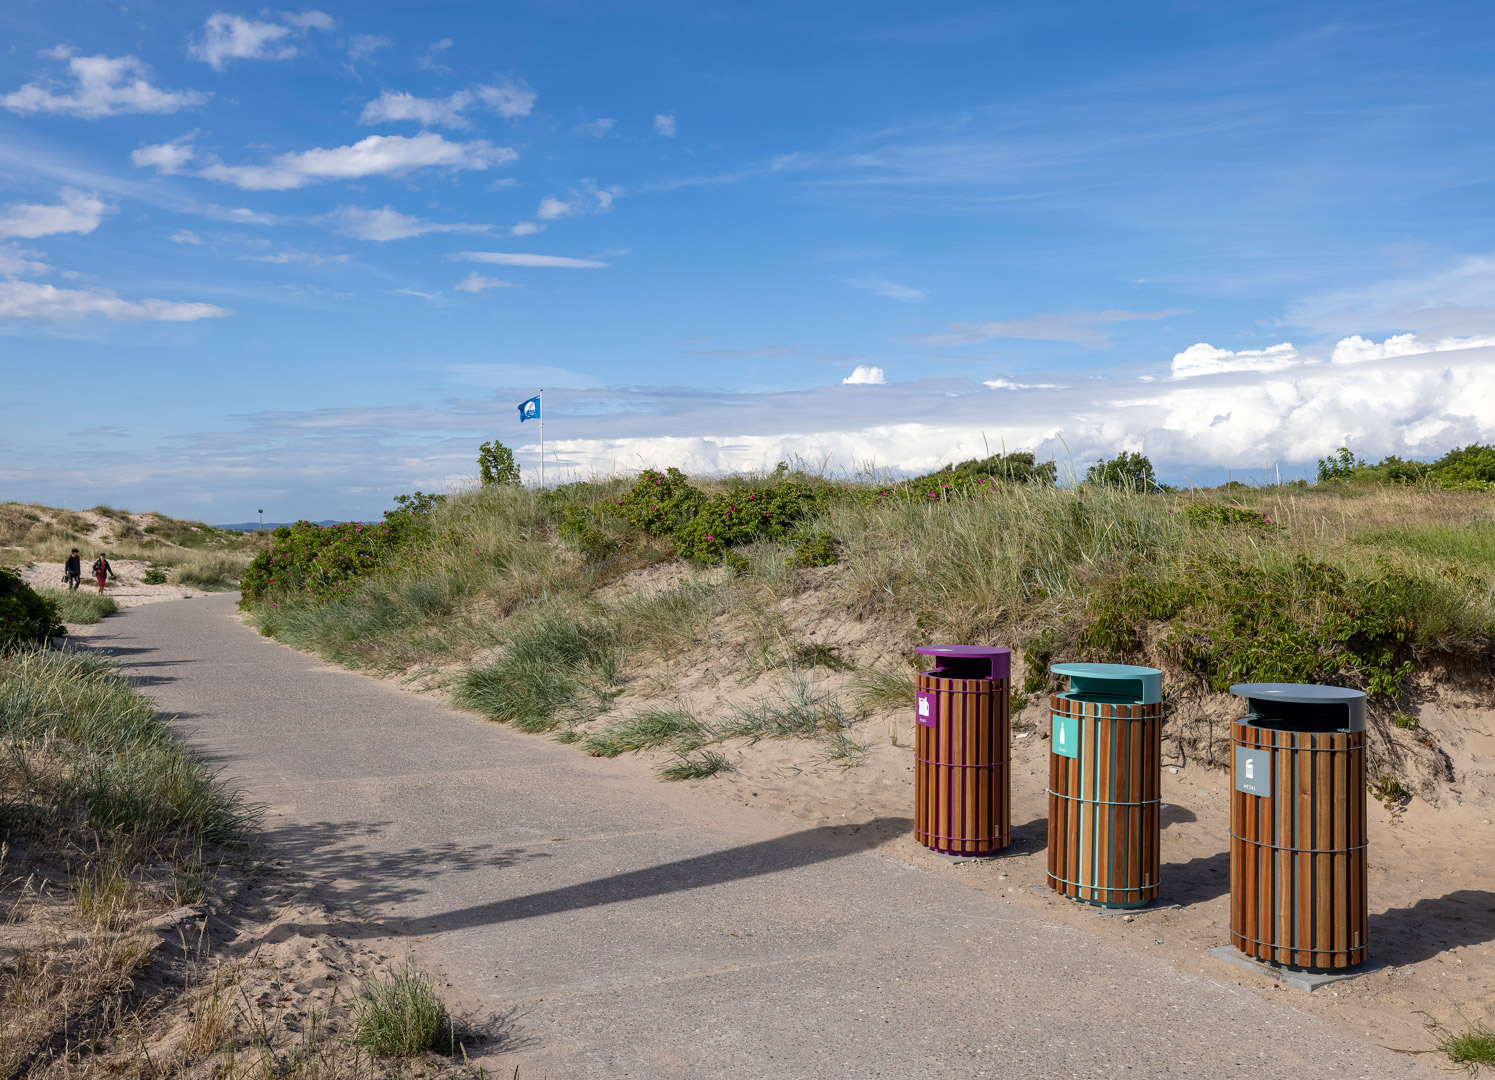 Affaldssortering på strand med blåt flag